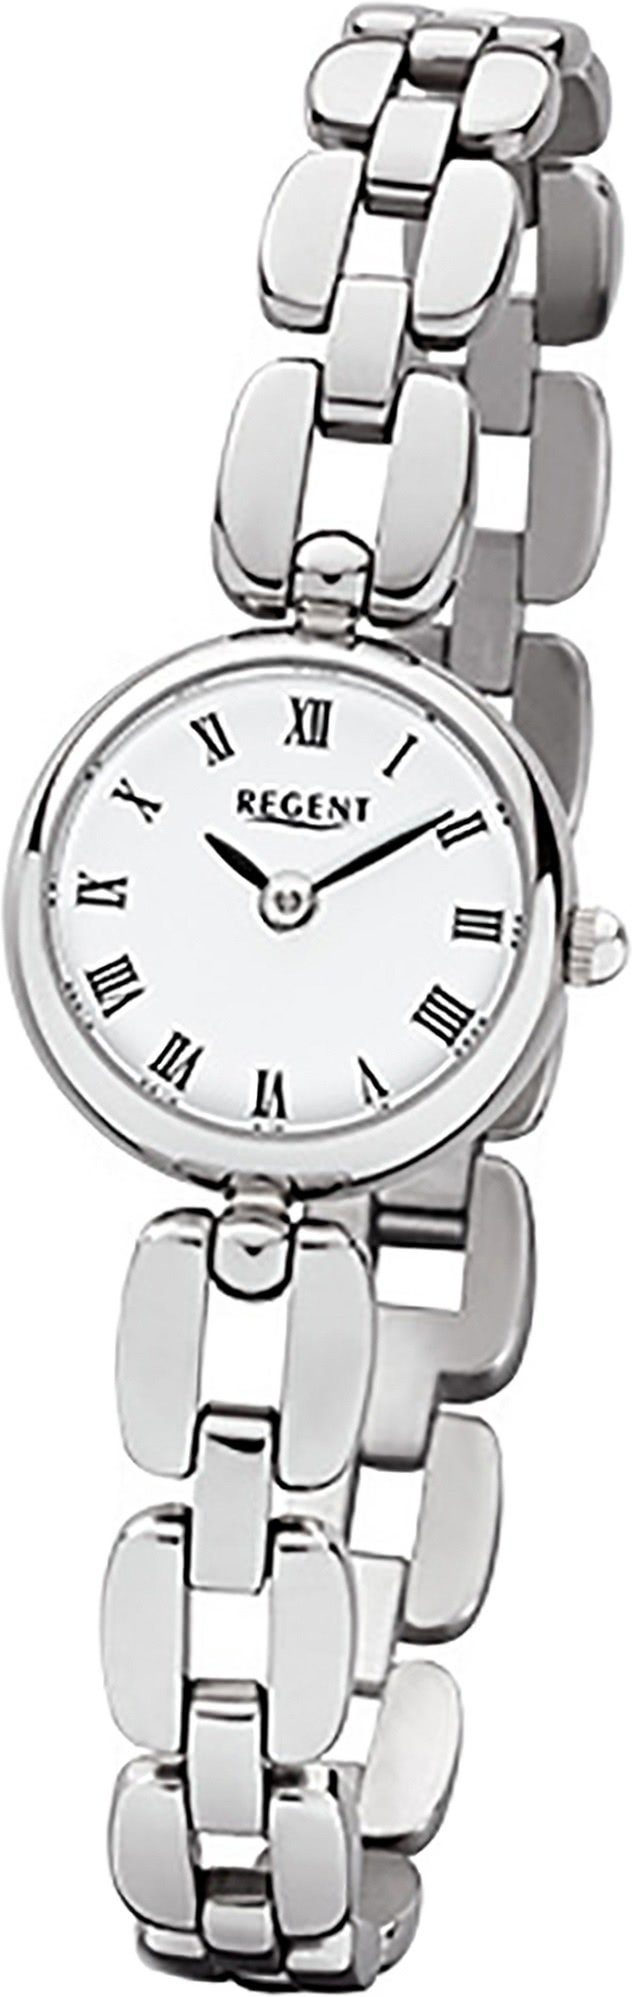 Regent Quarzuhr Regent Stahl Damen Uhr F-965 Quarzuhr, Damenuhr mit Edelstahlarmband, rundes Gehäuse, klein (ca. 20mm), Elega